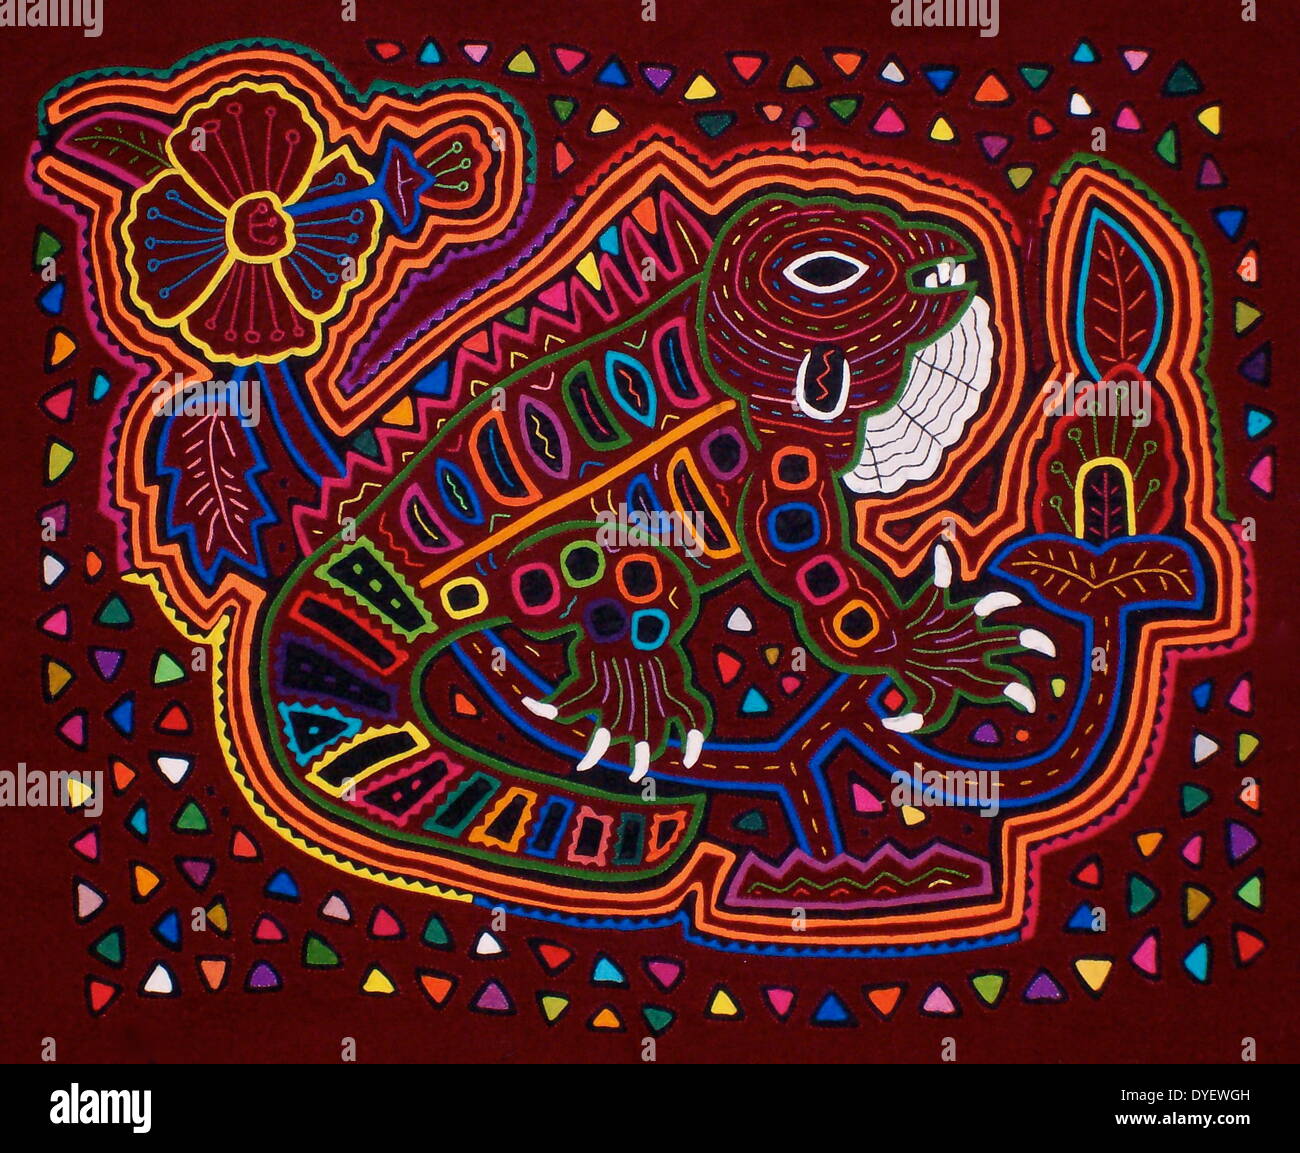 Mola Kuna textiles artista indio, representando una iguana. Desde el Archipiélago de San Blas, Panamá. Invertir applique diseño femenino desgastados en BLUSA. Foto de stock